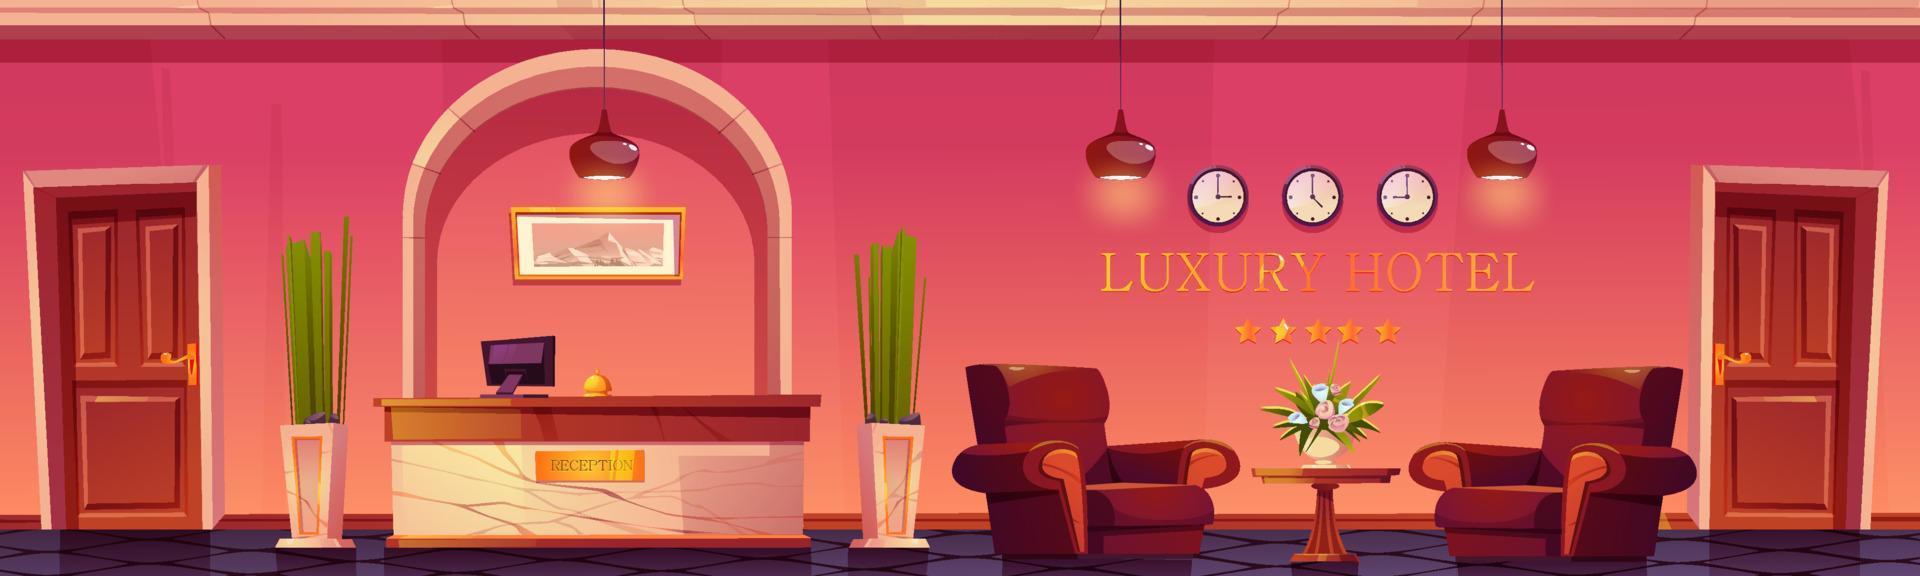 lyx hotell lobby med reception skrivbord och blommor vektor